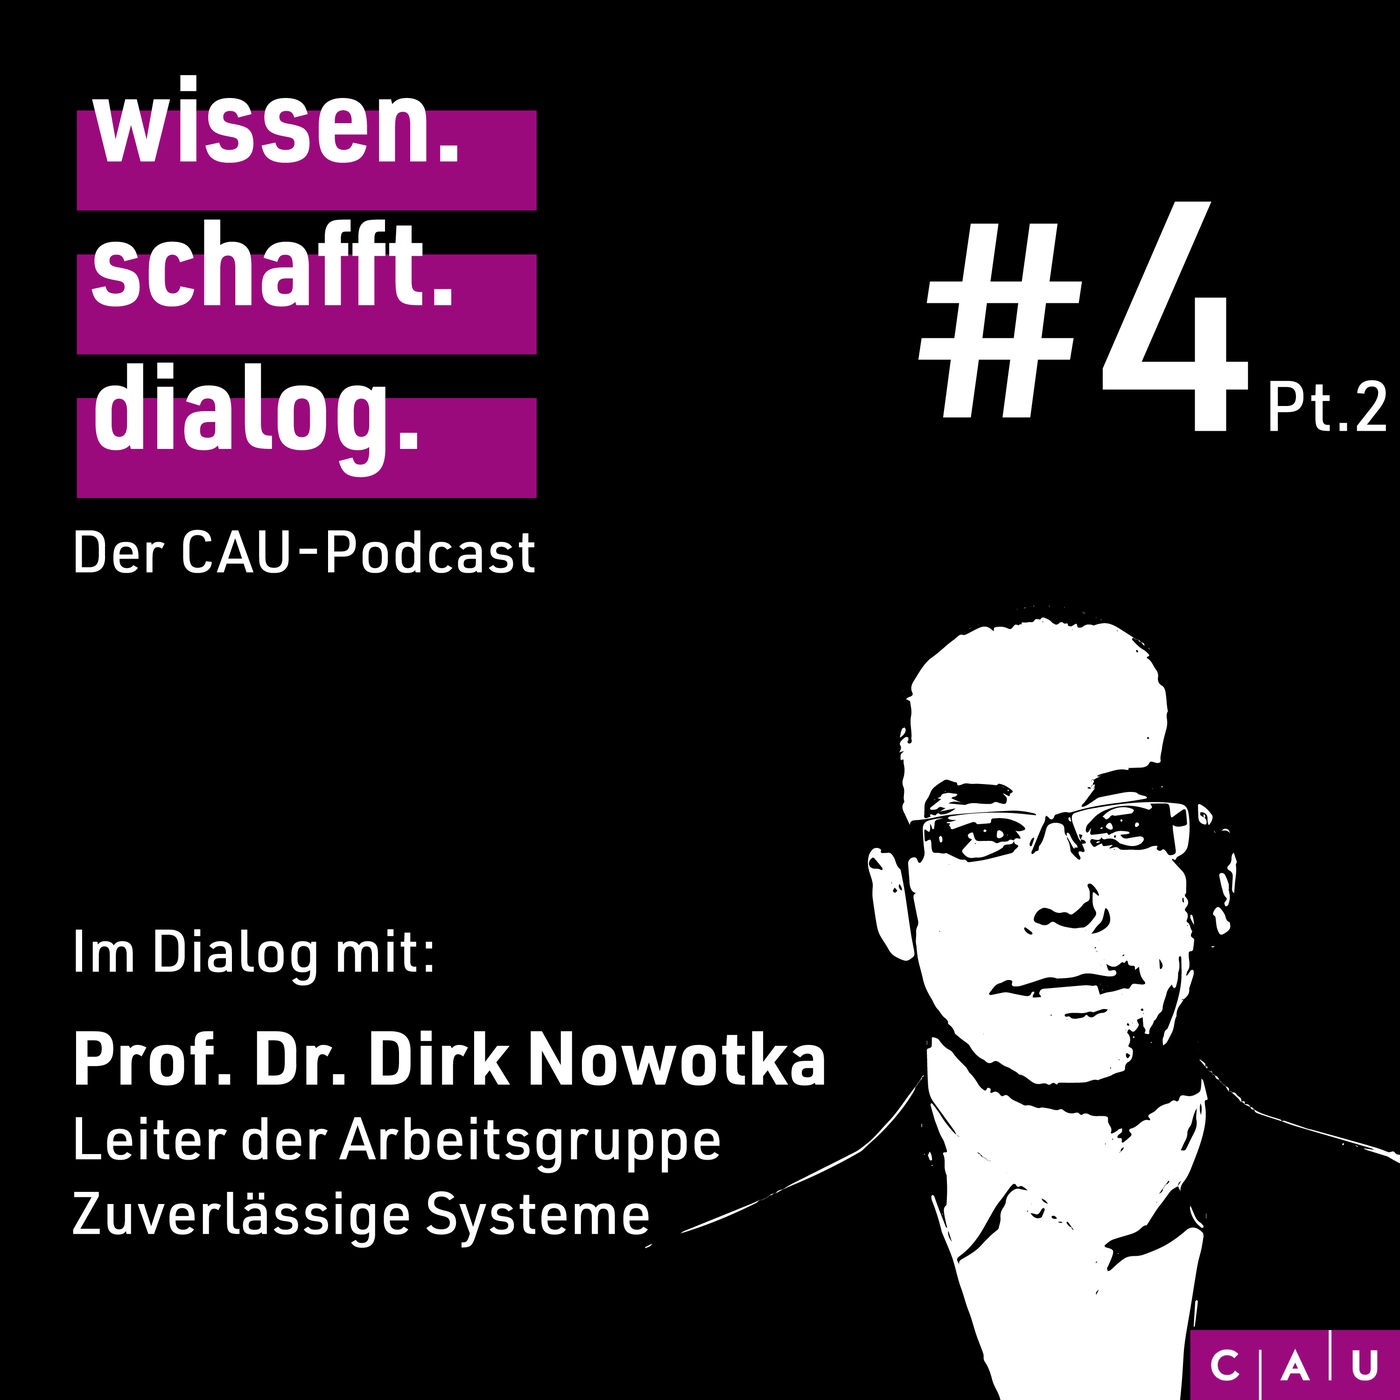 Im Dialog mit: Prof. Dr. Dirk Nowotka (Pt. 2)